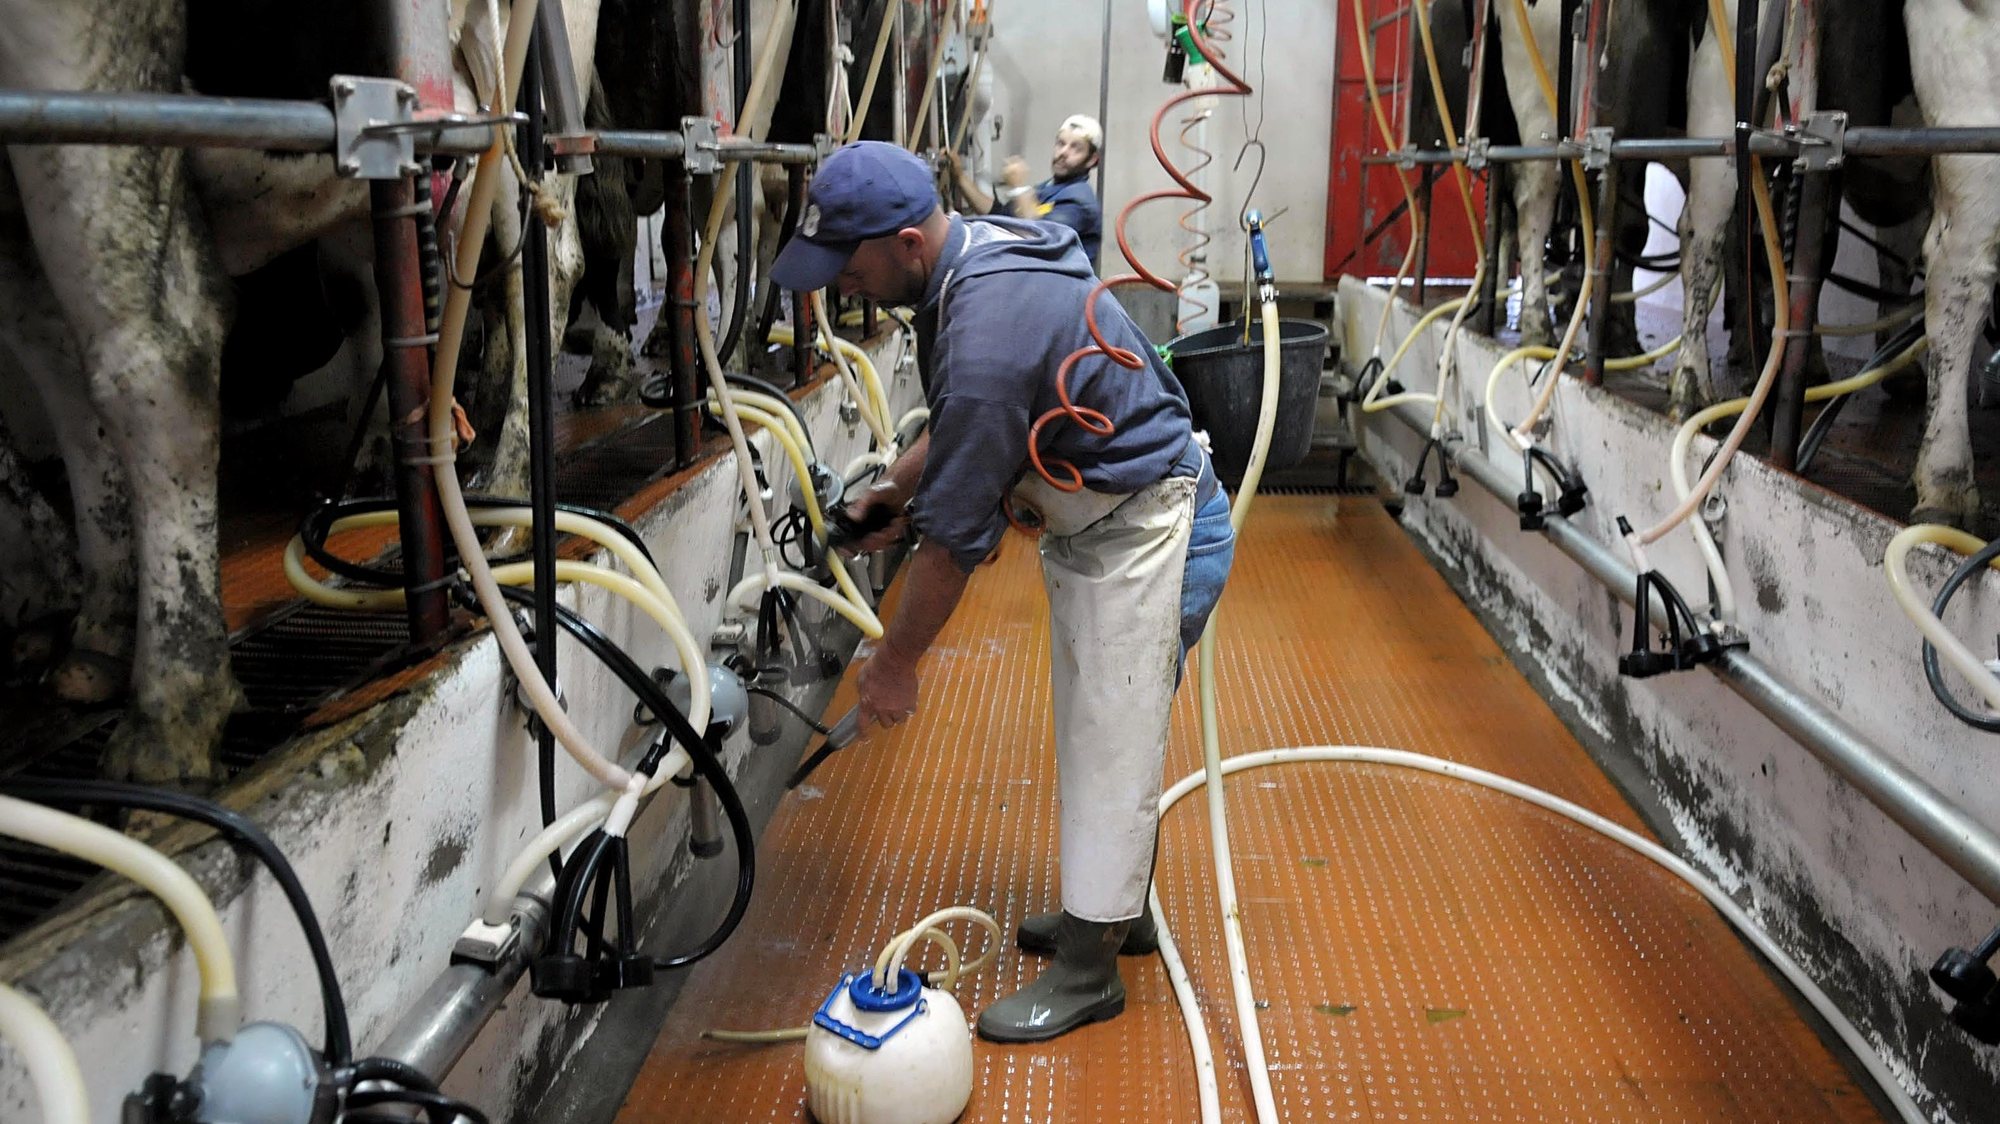 A crise de produtos alimentares faz a União Europeia repensar as cotas leiteiras e os Açores não estão alheios a estas alterações, Ilha de São Miguel, 22 de Maio de 2008. (ACOMPANHA TEXTO) EDUARDO COSTA / LUSA